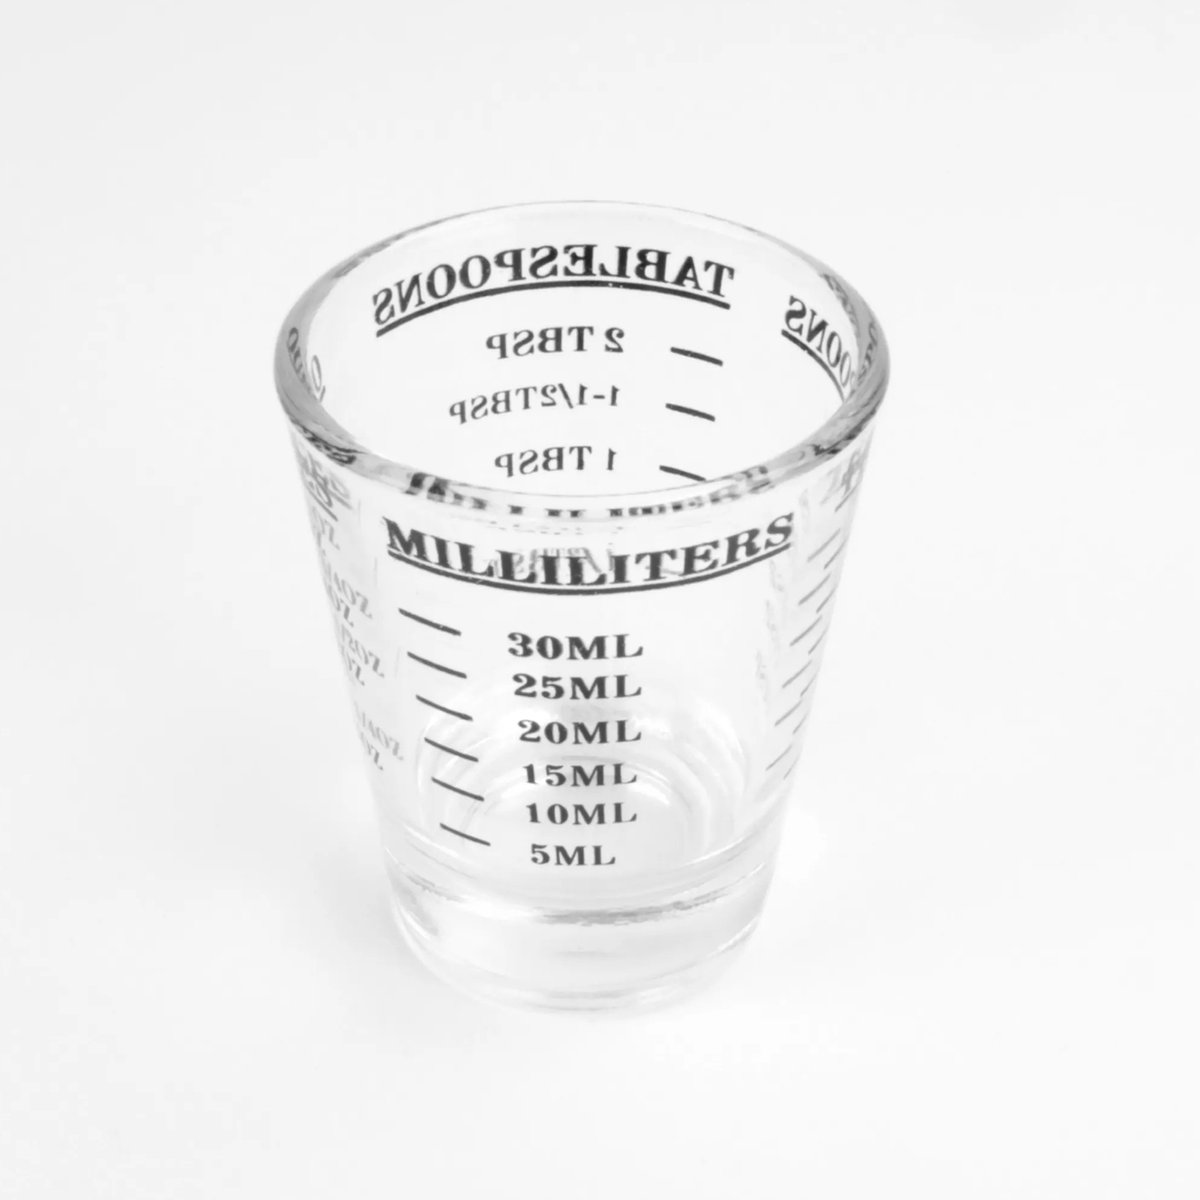 Espresso shotglas – rond – 30ml – espresso glas – maatglas - shotglas